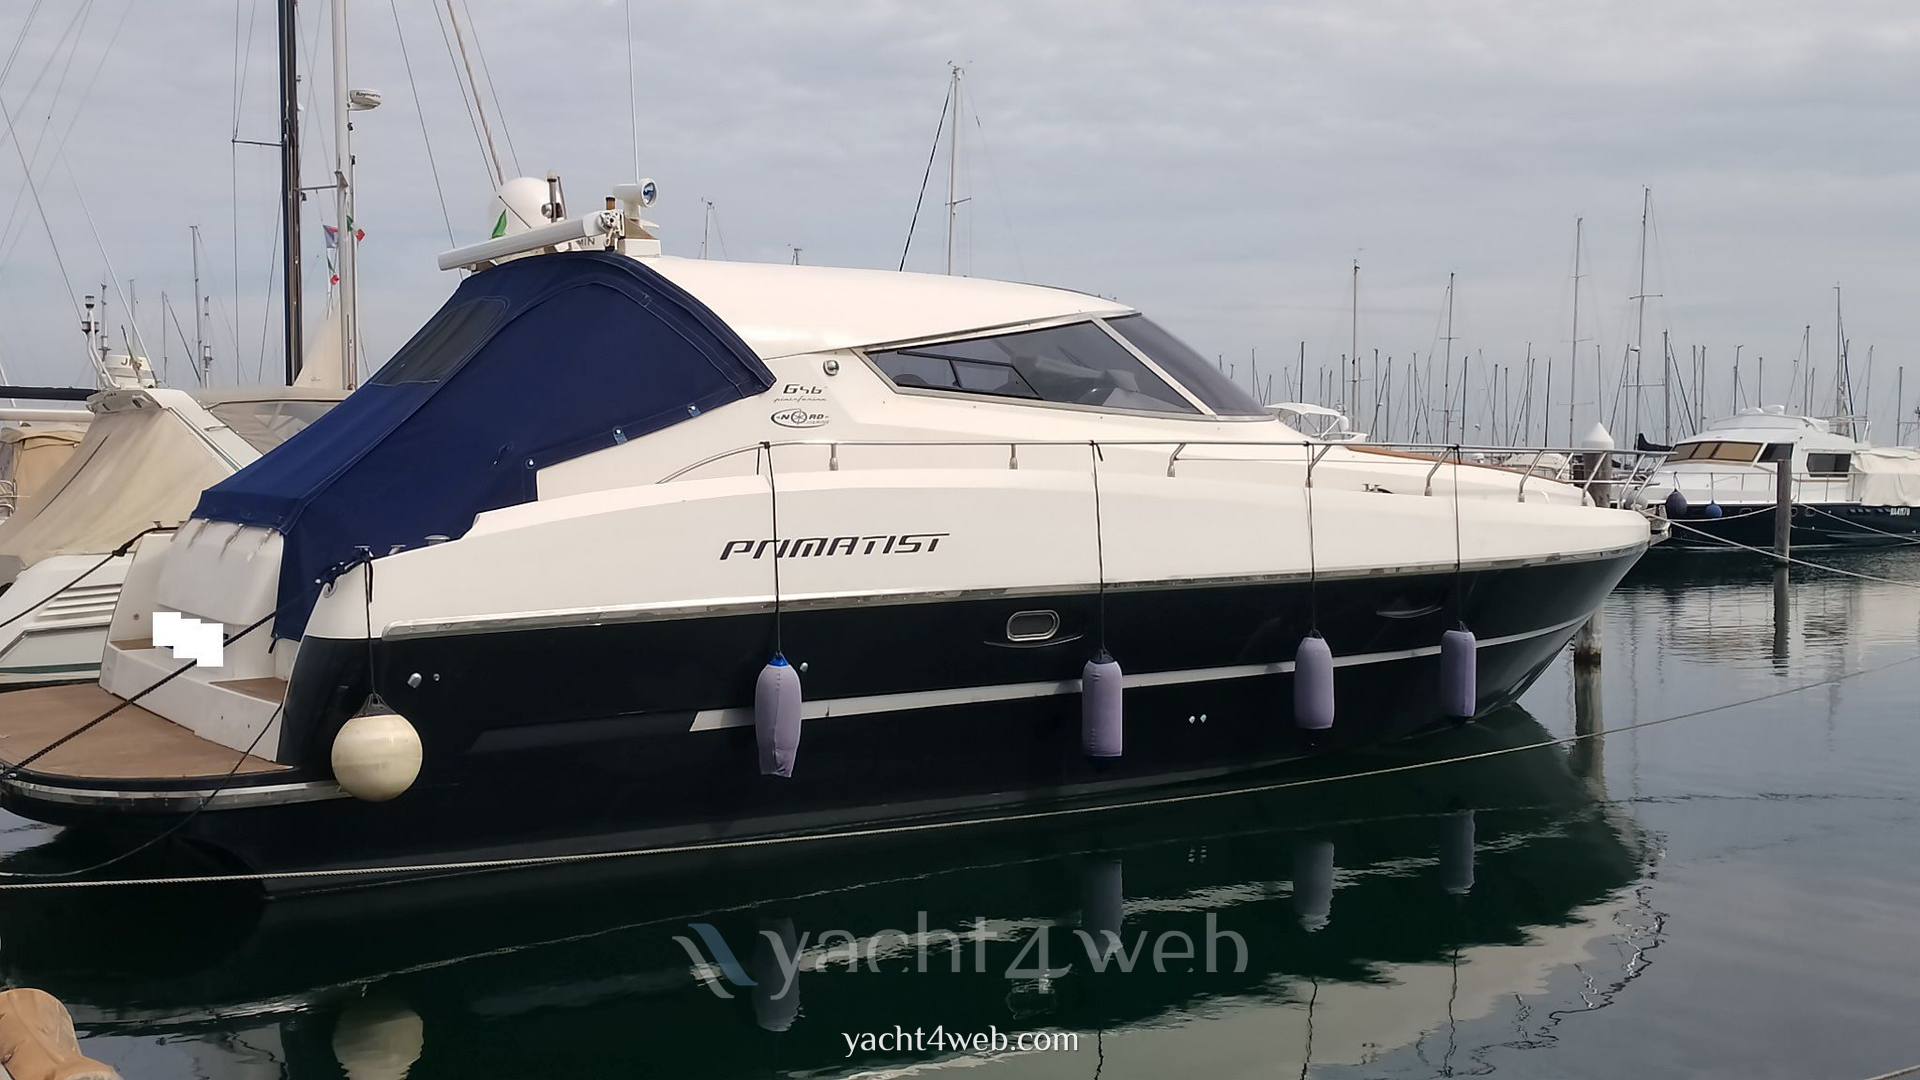 Abbate primatist G46 g 46 primatist Motorboot gebraucht zum Verkauf